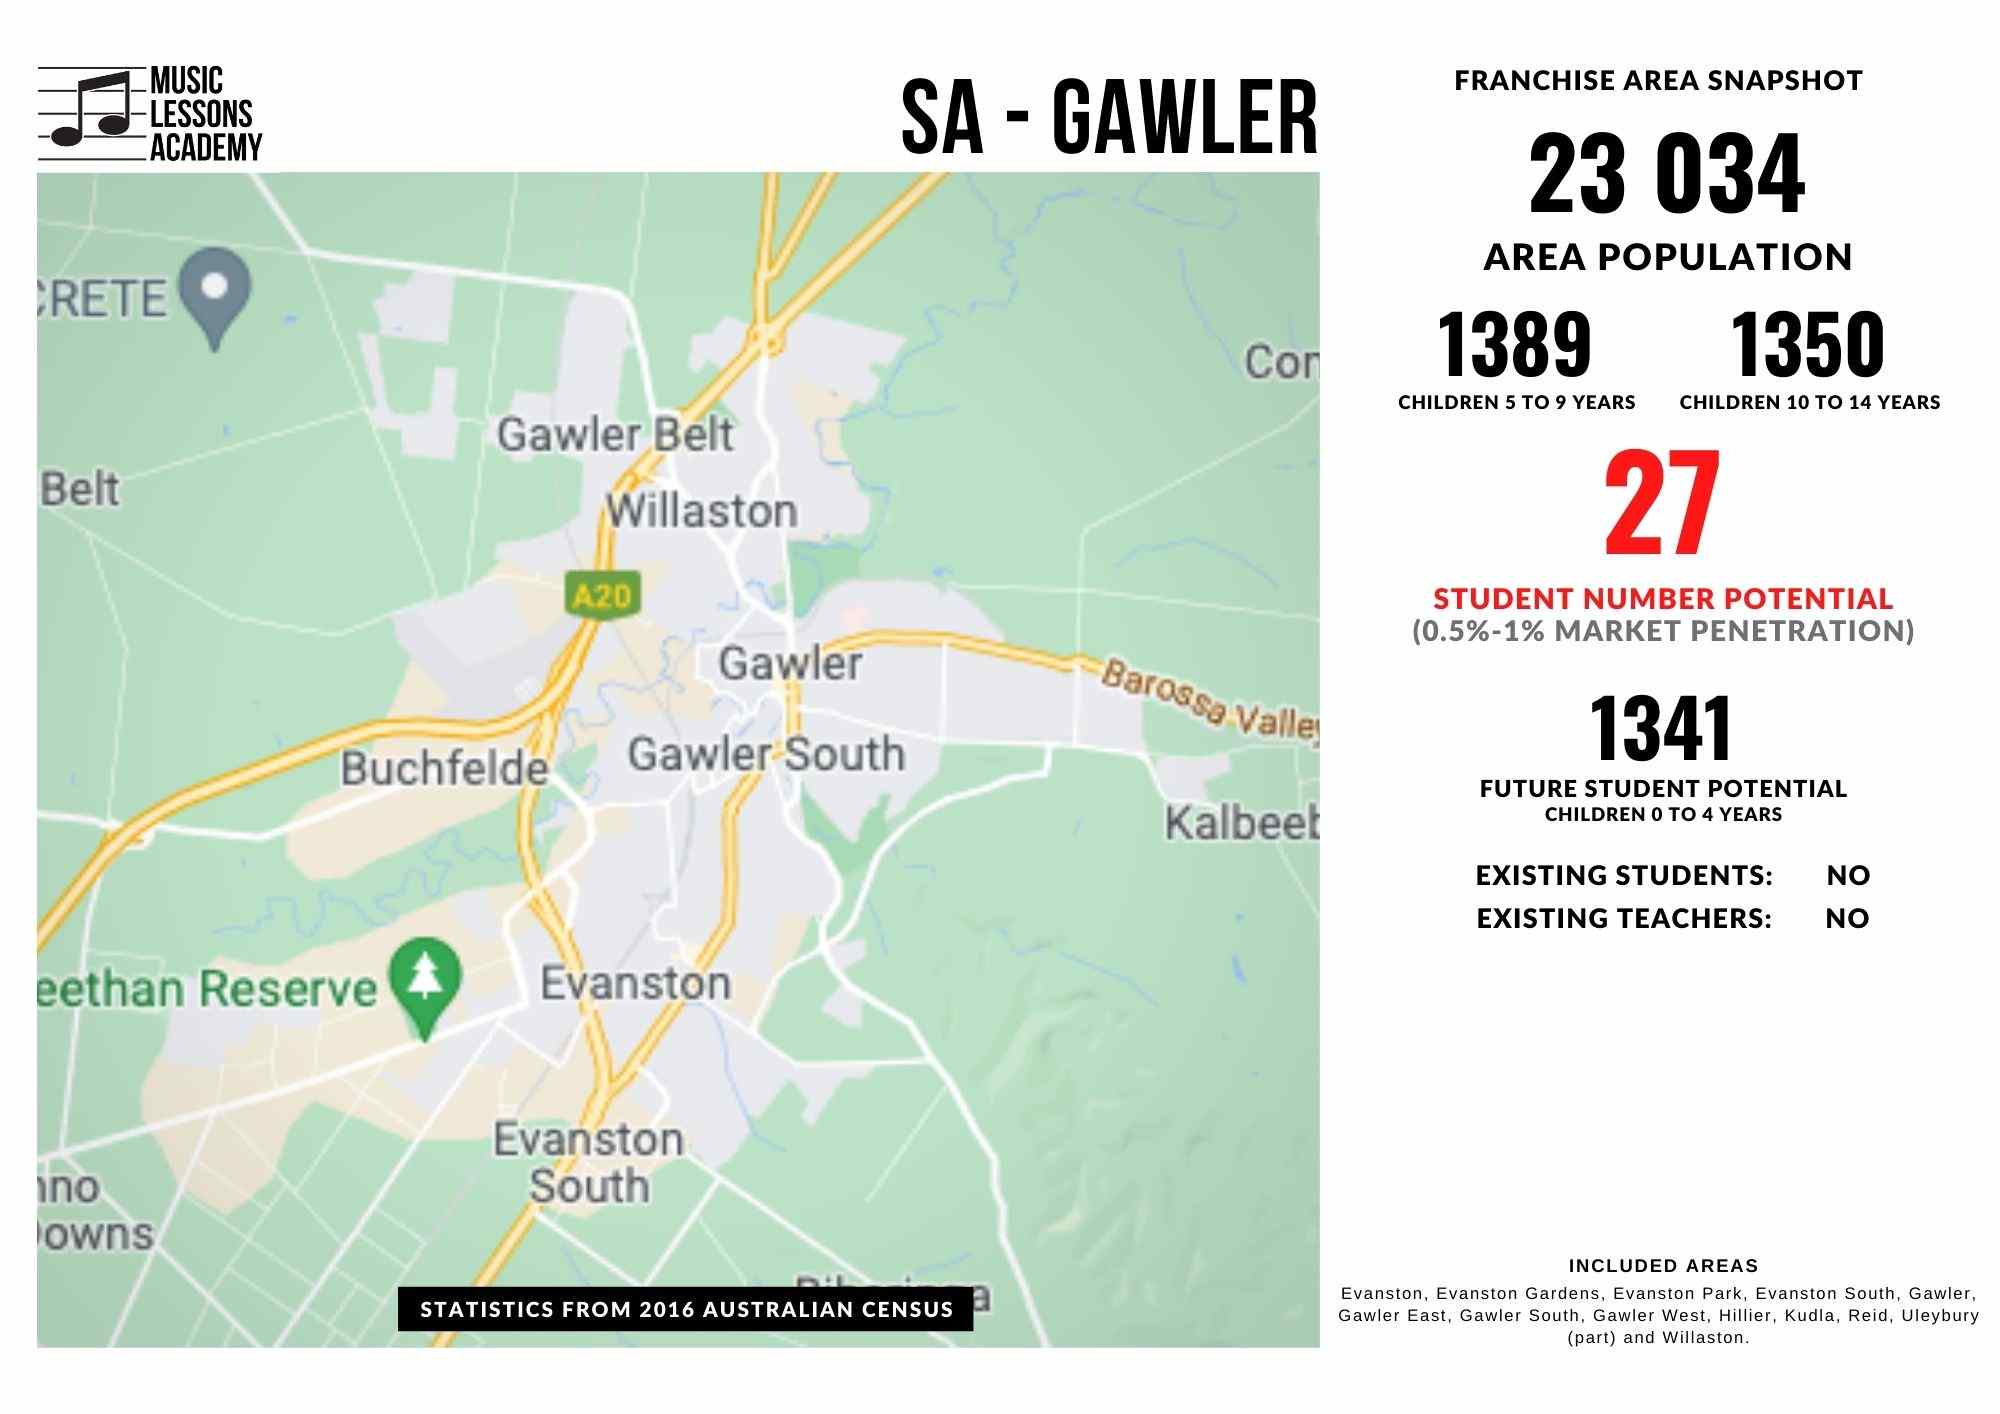 SA Gawler Franchise for sale